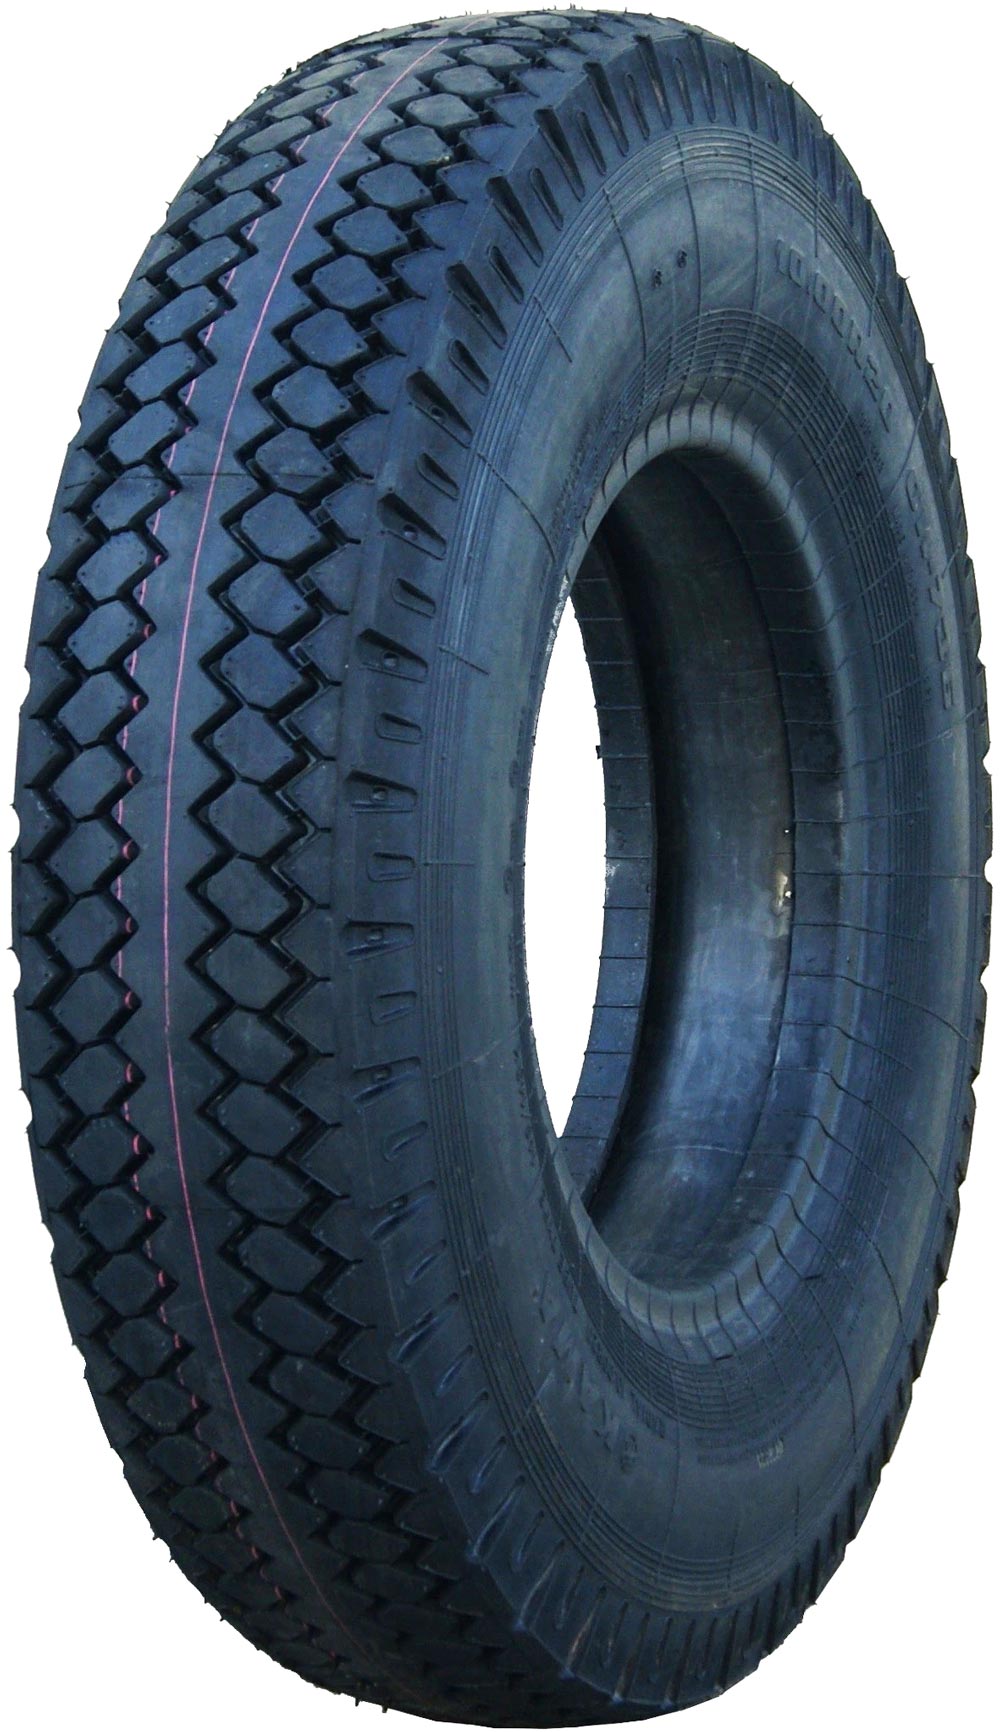 product_type-heavy_tires KAMA ОИ-73Б 16PR 10 R20 143P